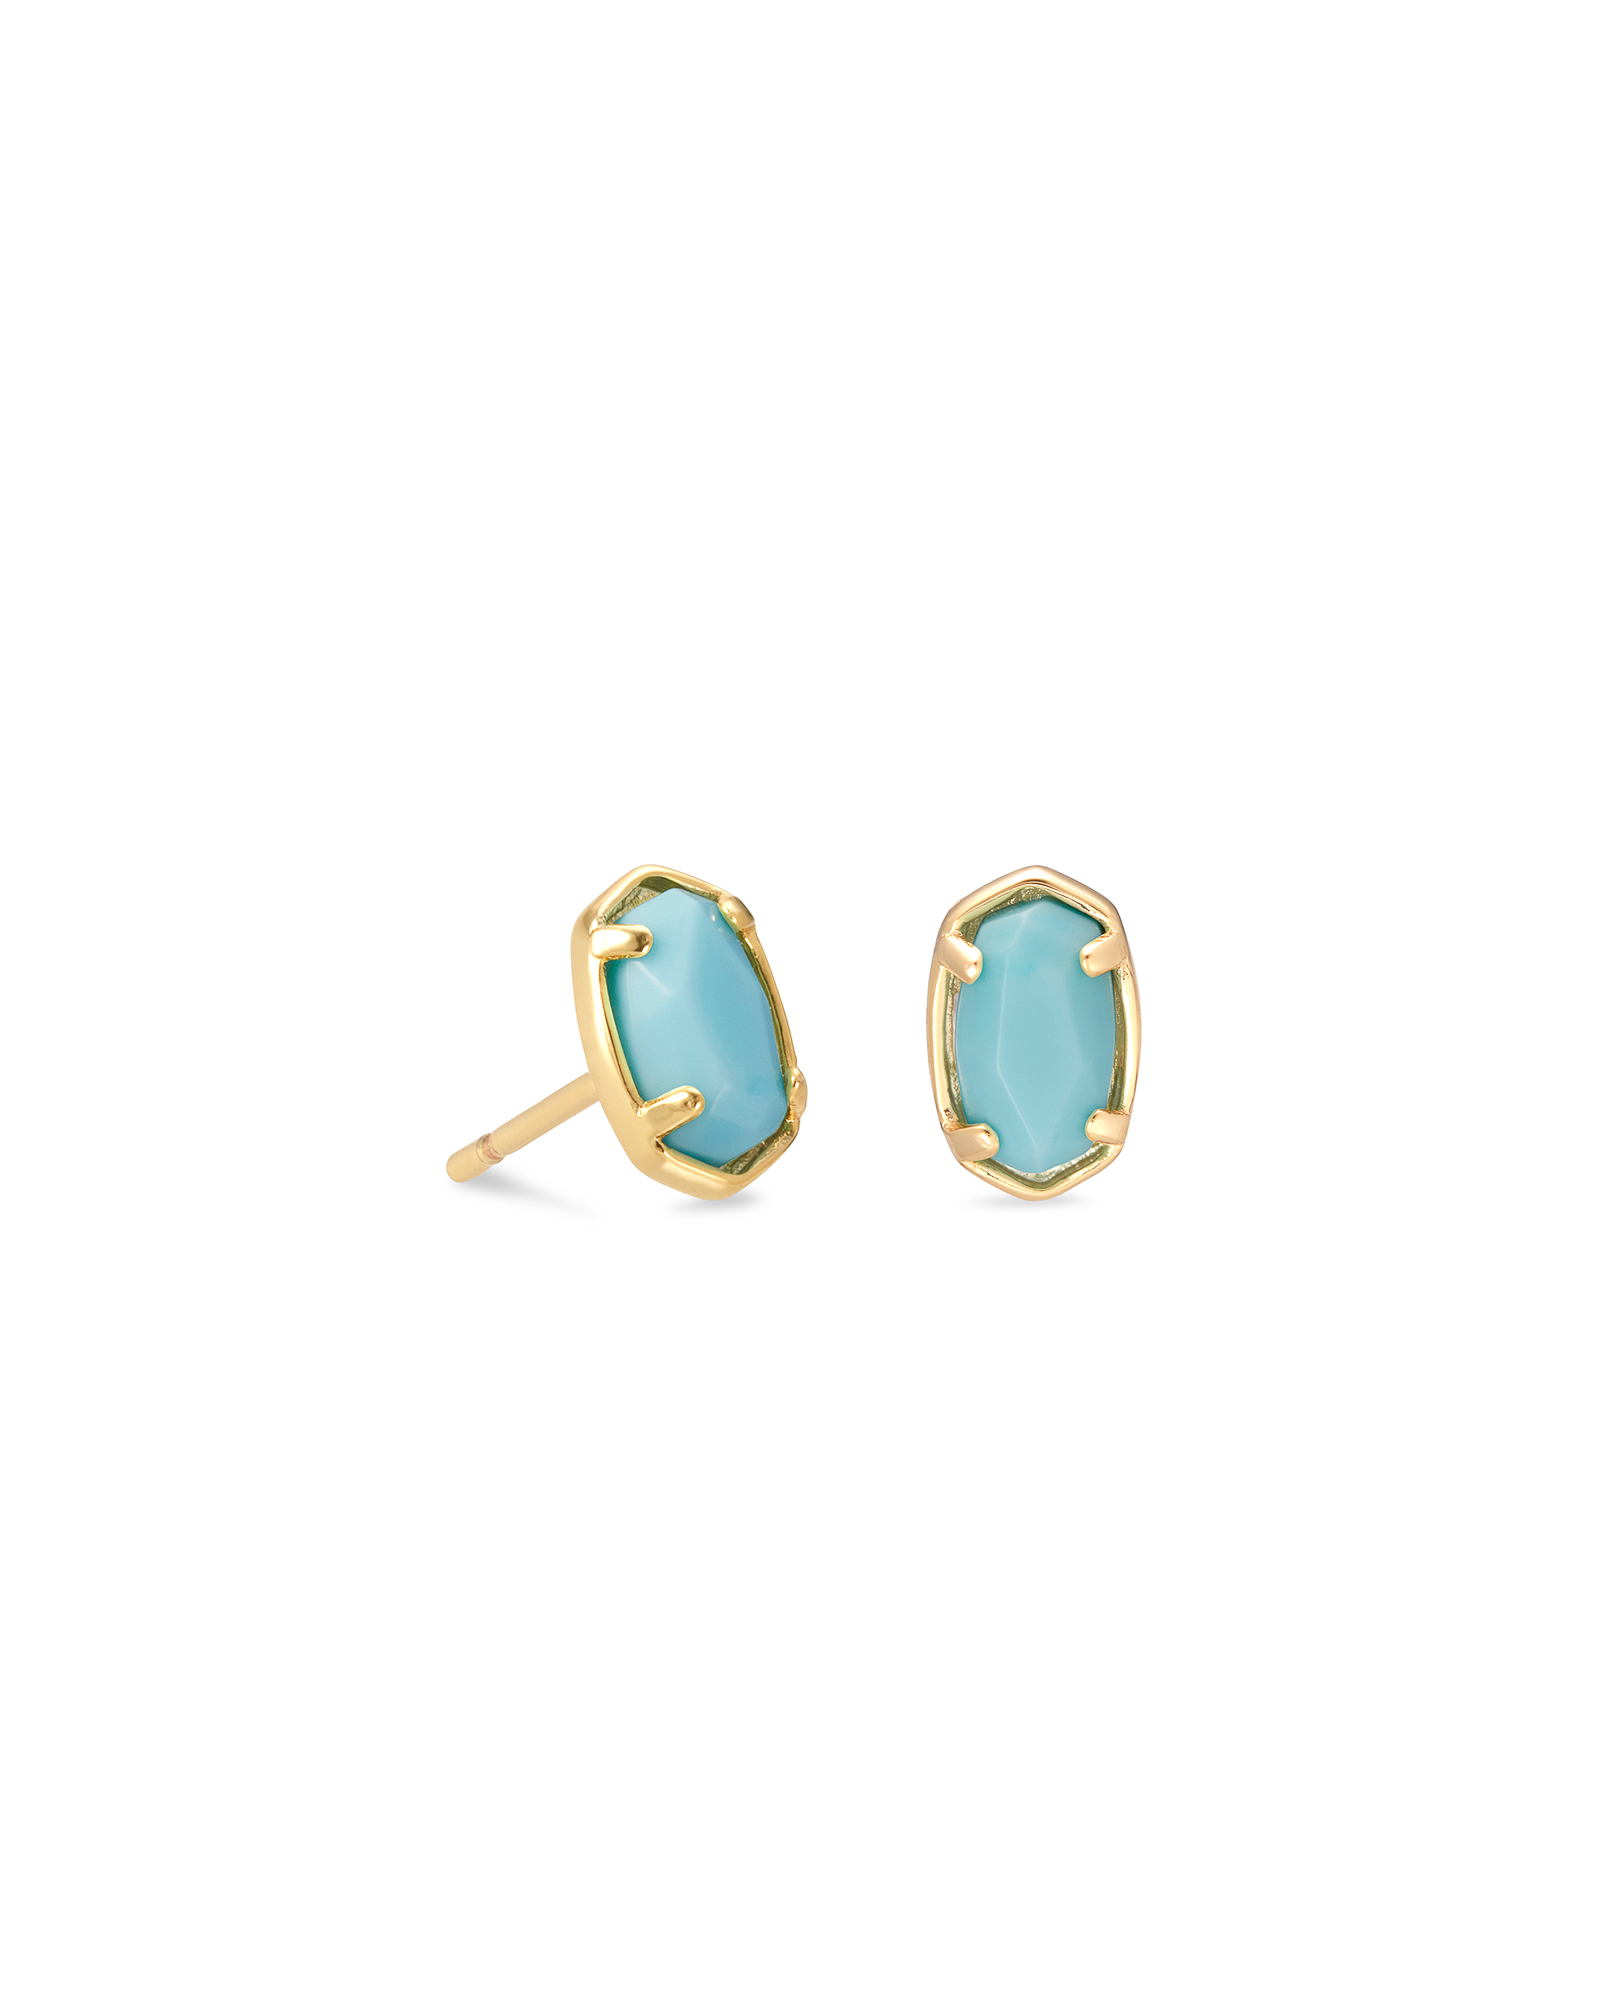 Emilie Gold Stud Earrings in Light Blue Magnesite | Kendra Scott